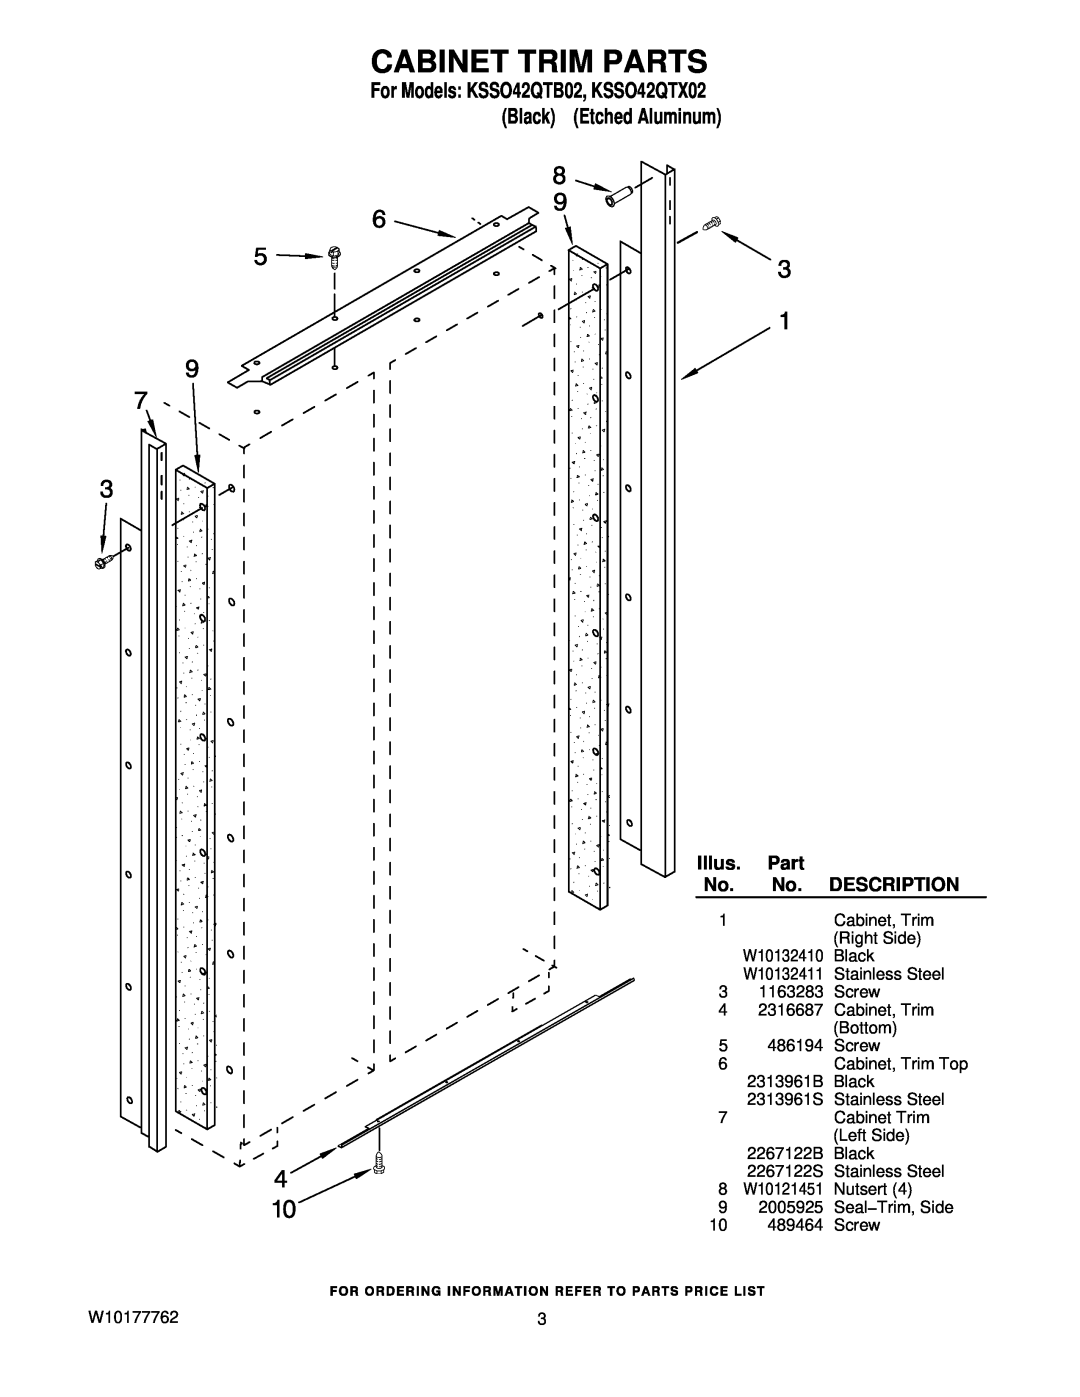 KitchenAid manual Cabinet Trim Parts, For Models KSSO42QTB02, KSSO42QTX02 Black Etched Aluminum, Illus, Description 